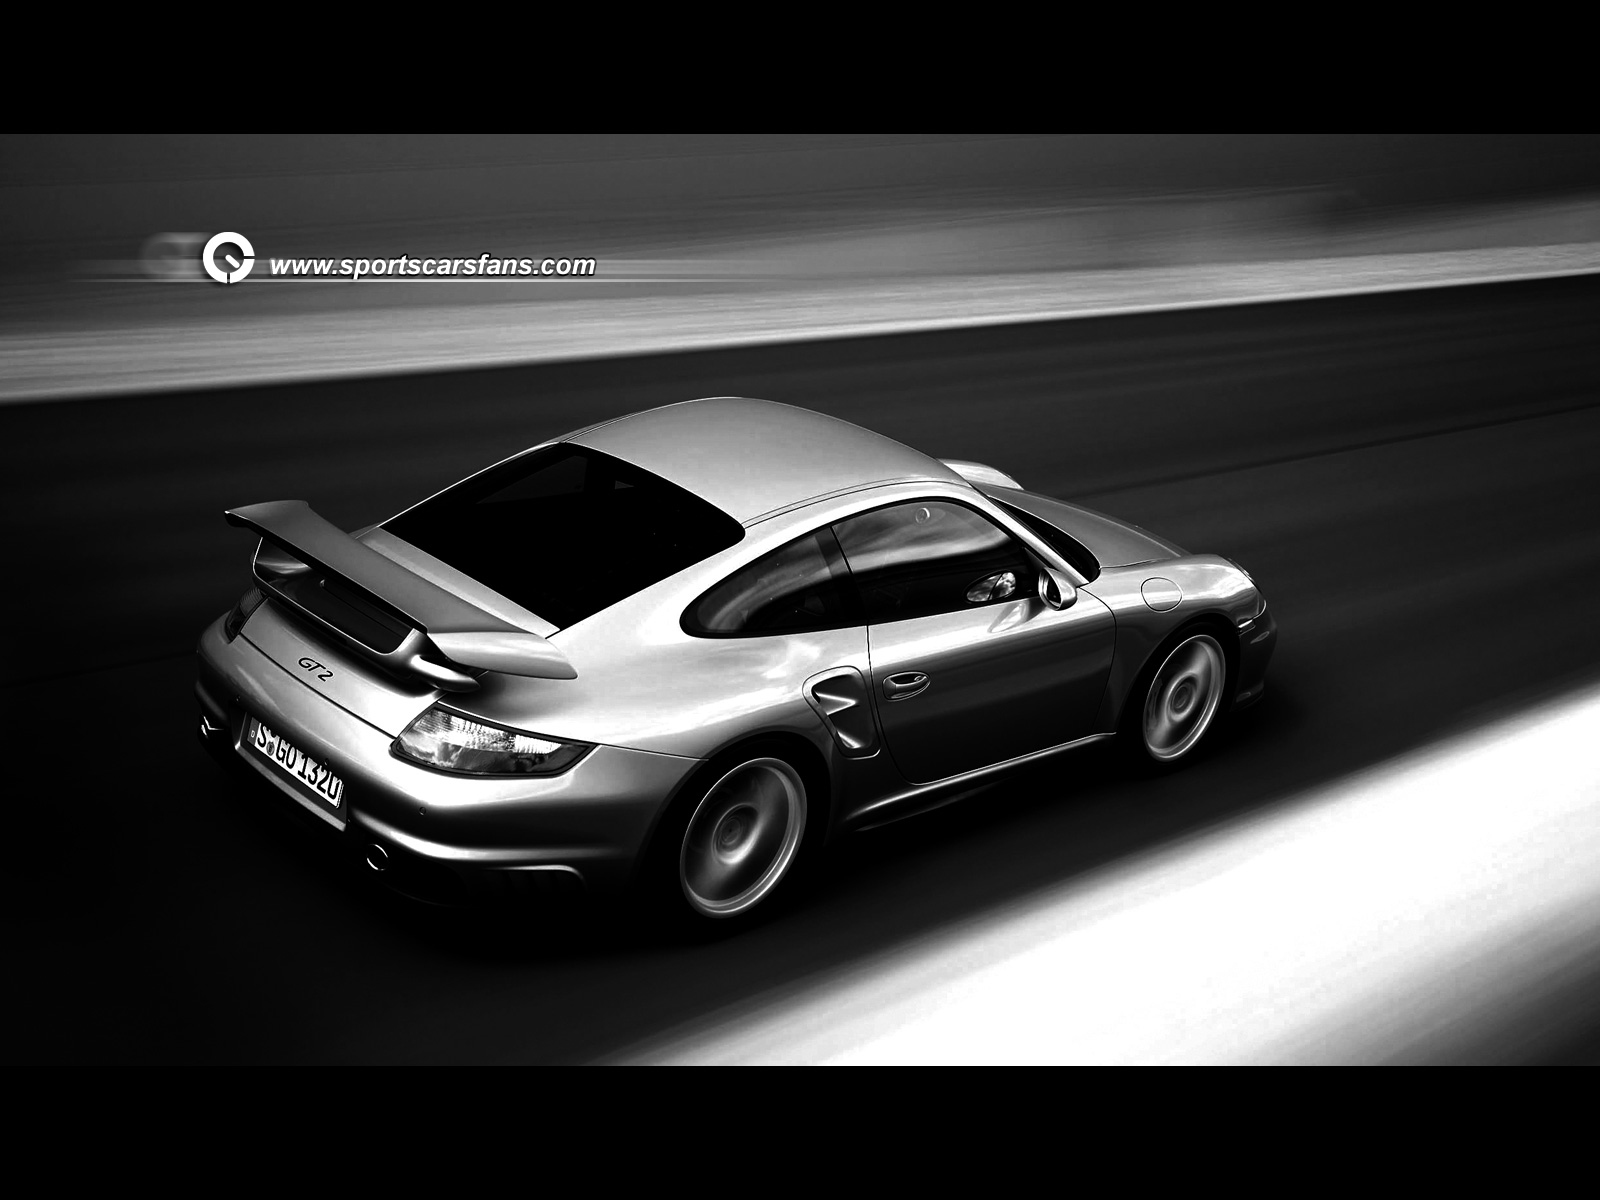 cool fast carsbest car wallpapers hdcar wallpaper 1080pcar images